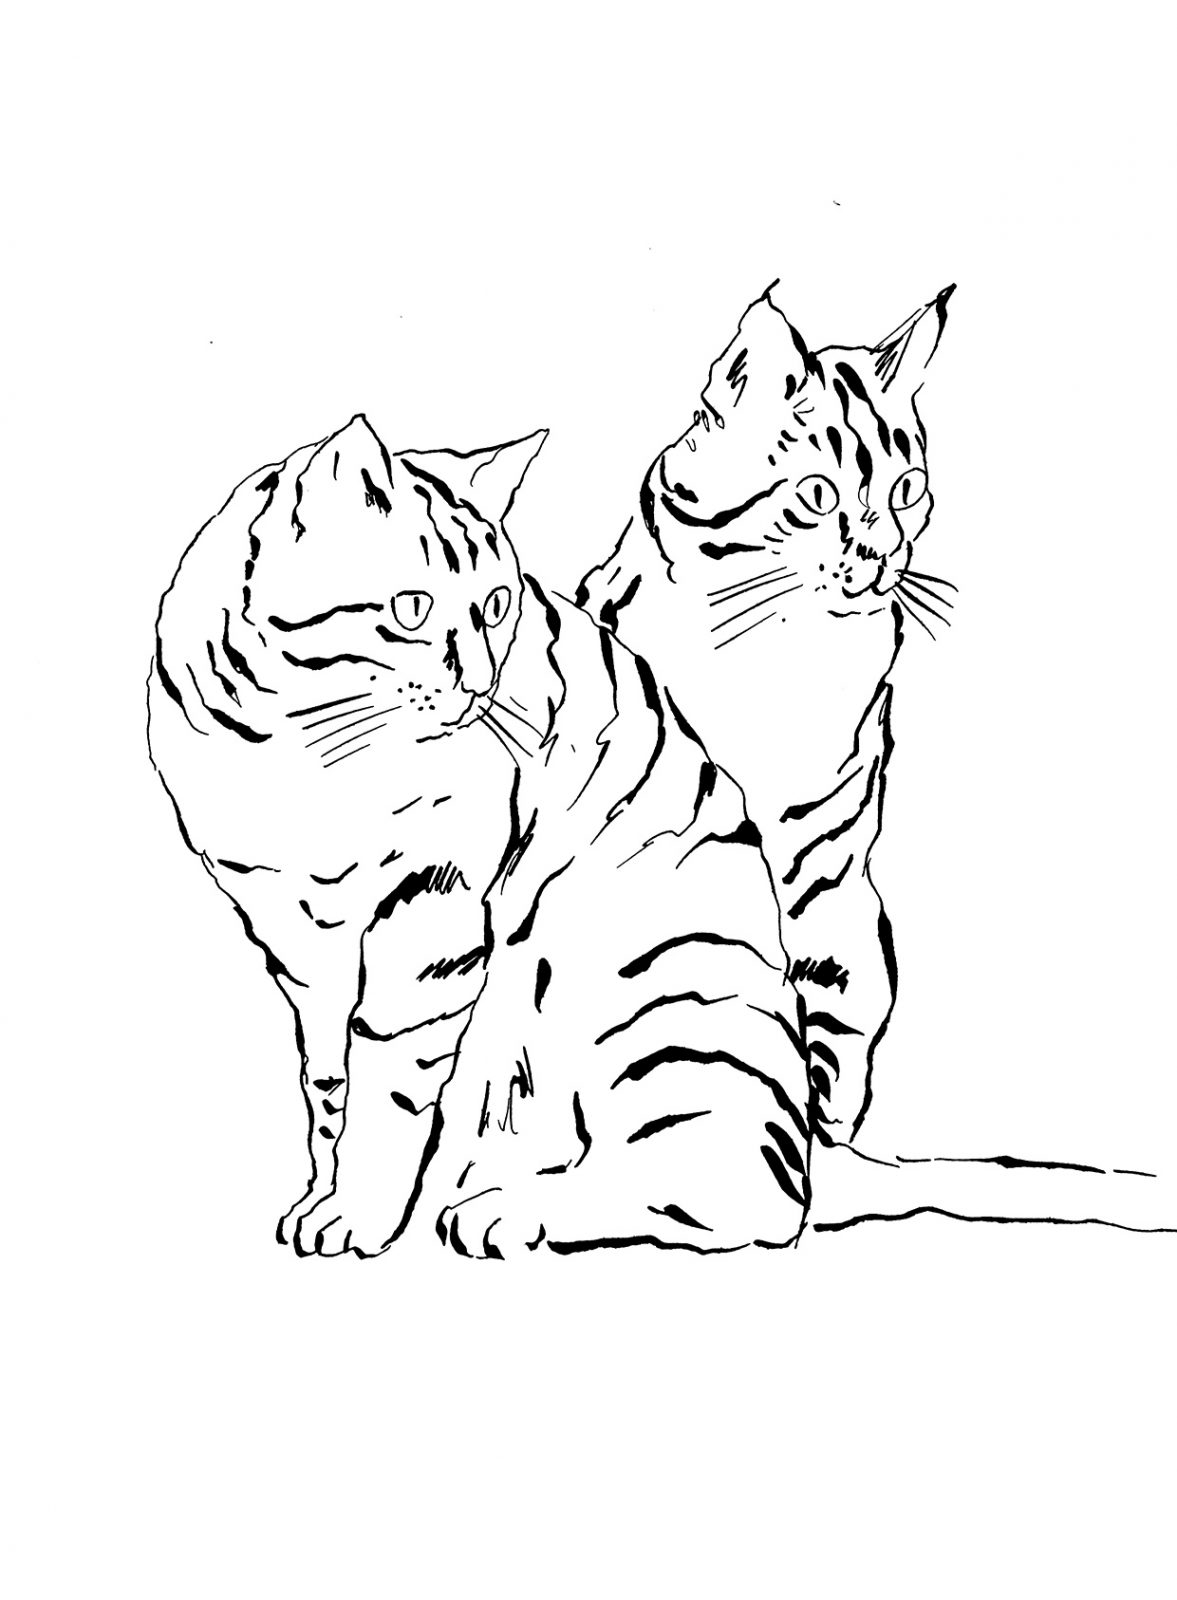 pentekening van katten